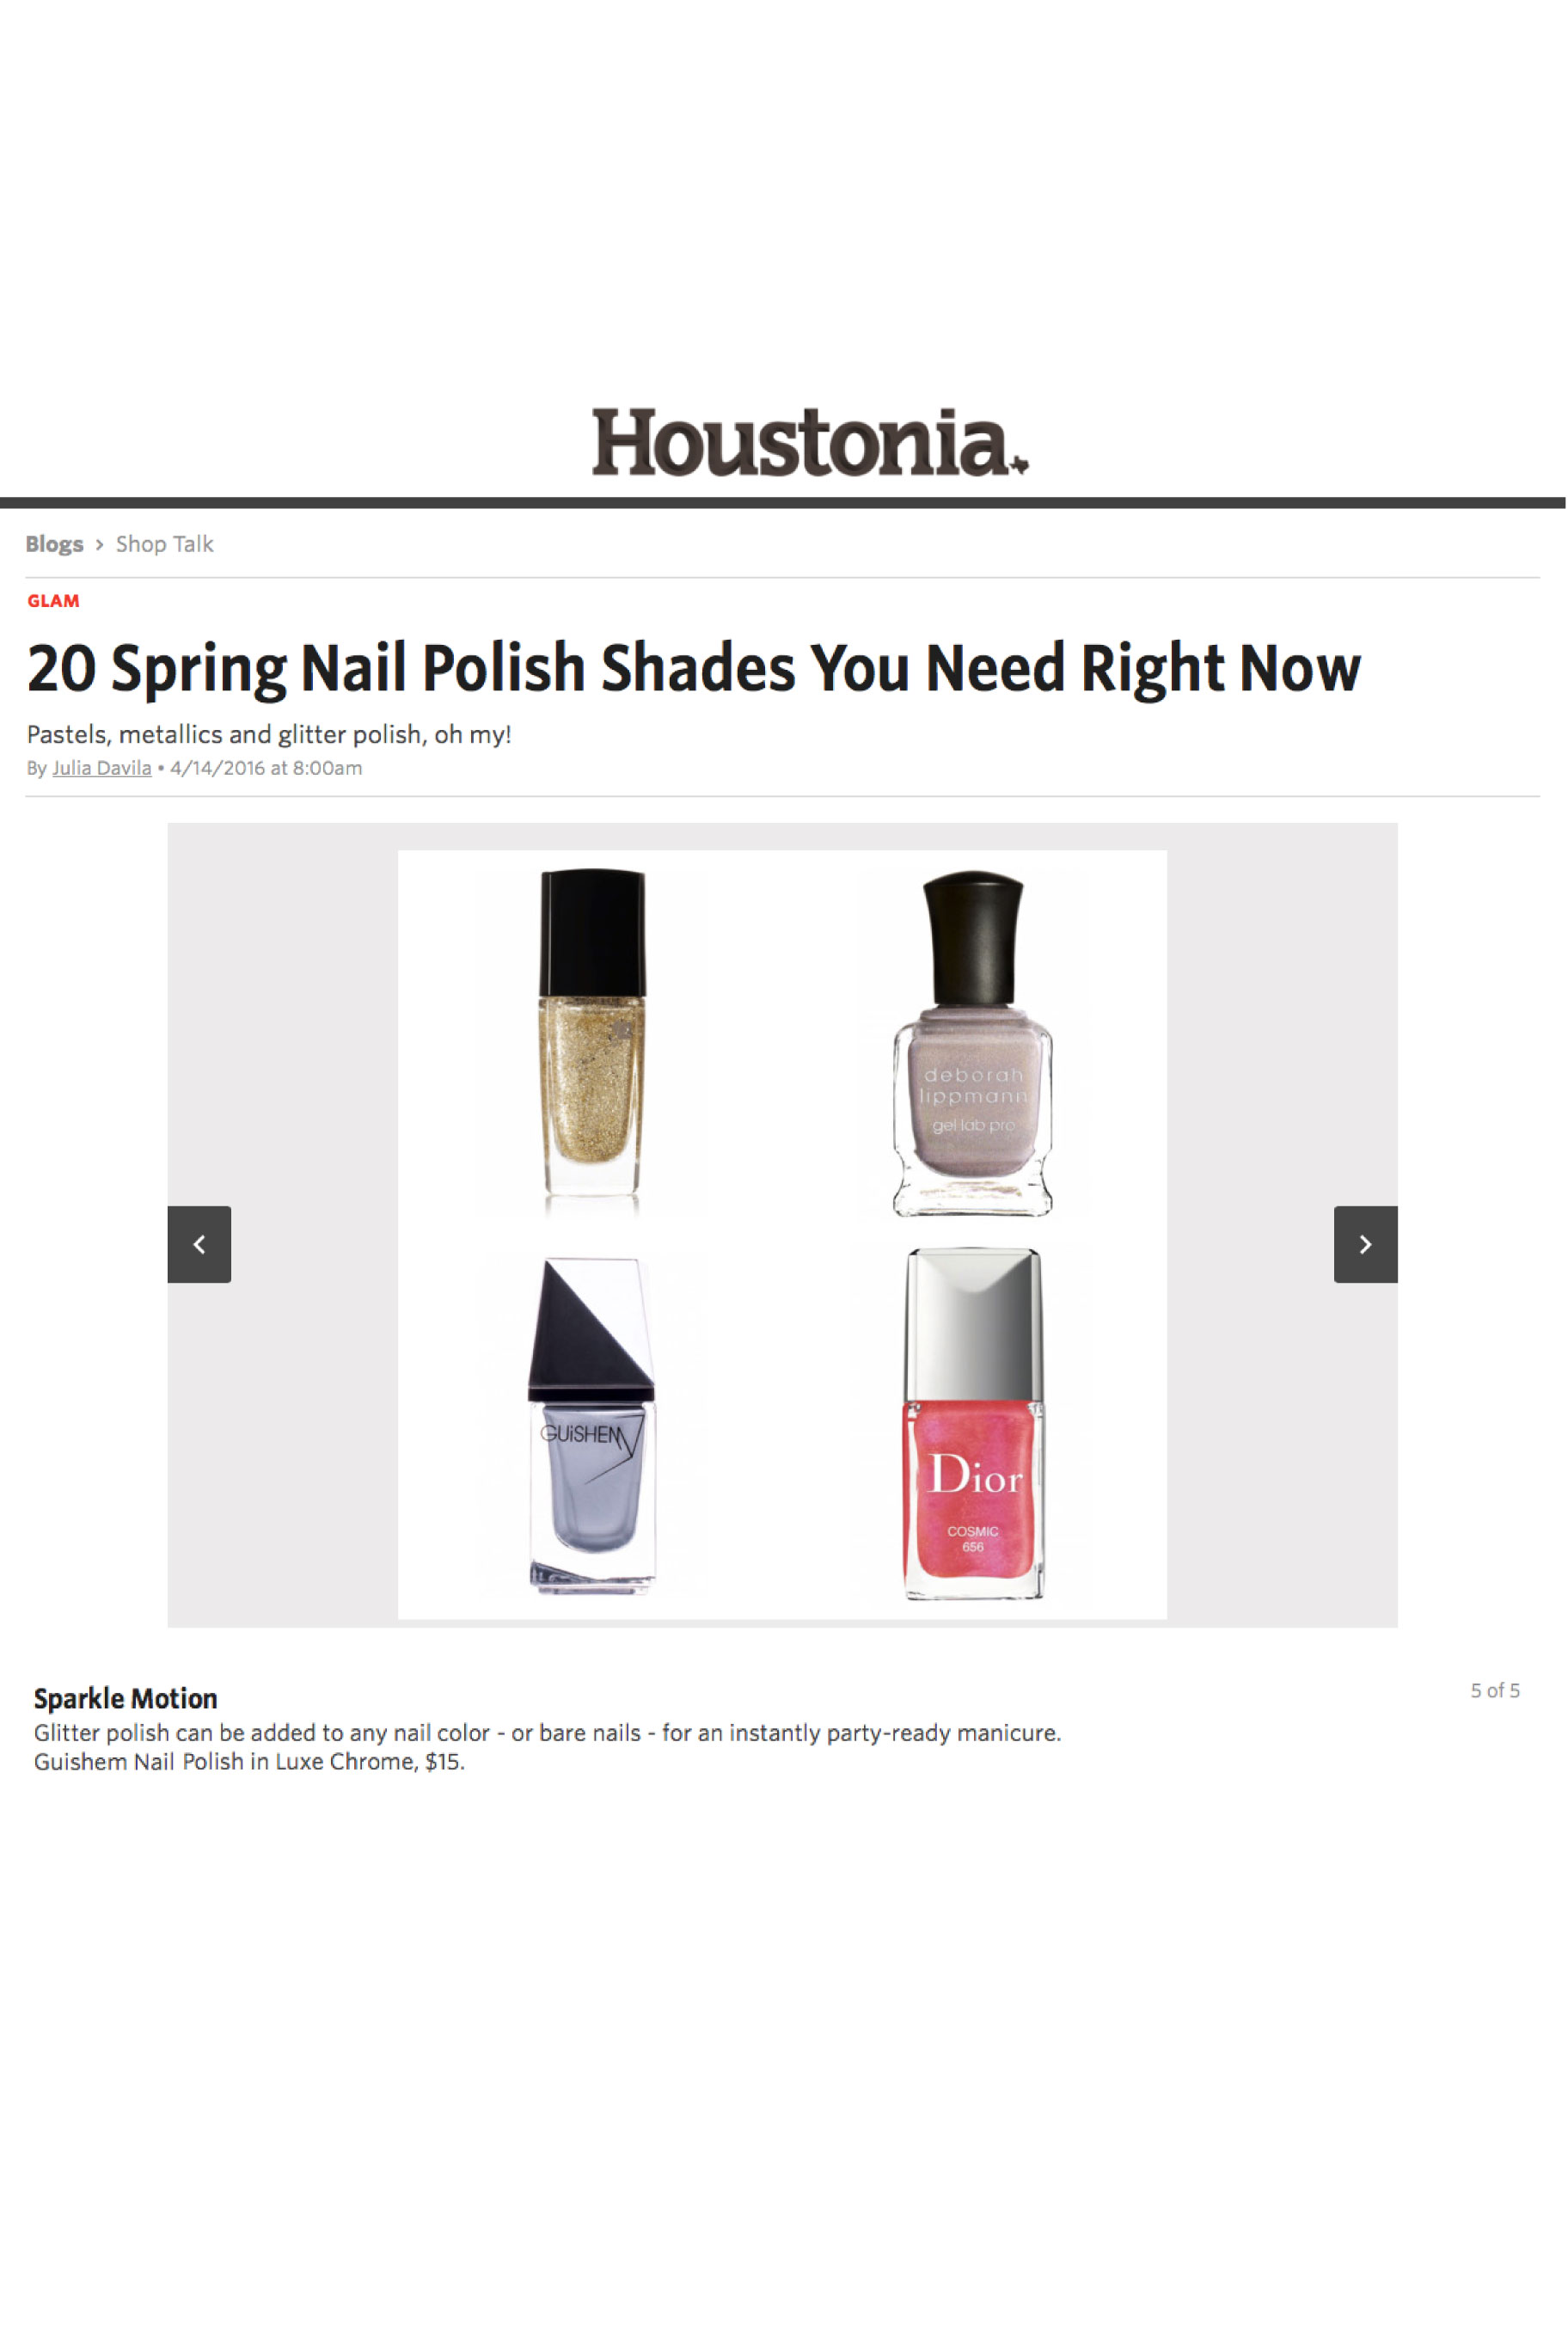 20 Spring Nail Polish Shades You Need Right Now